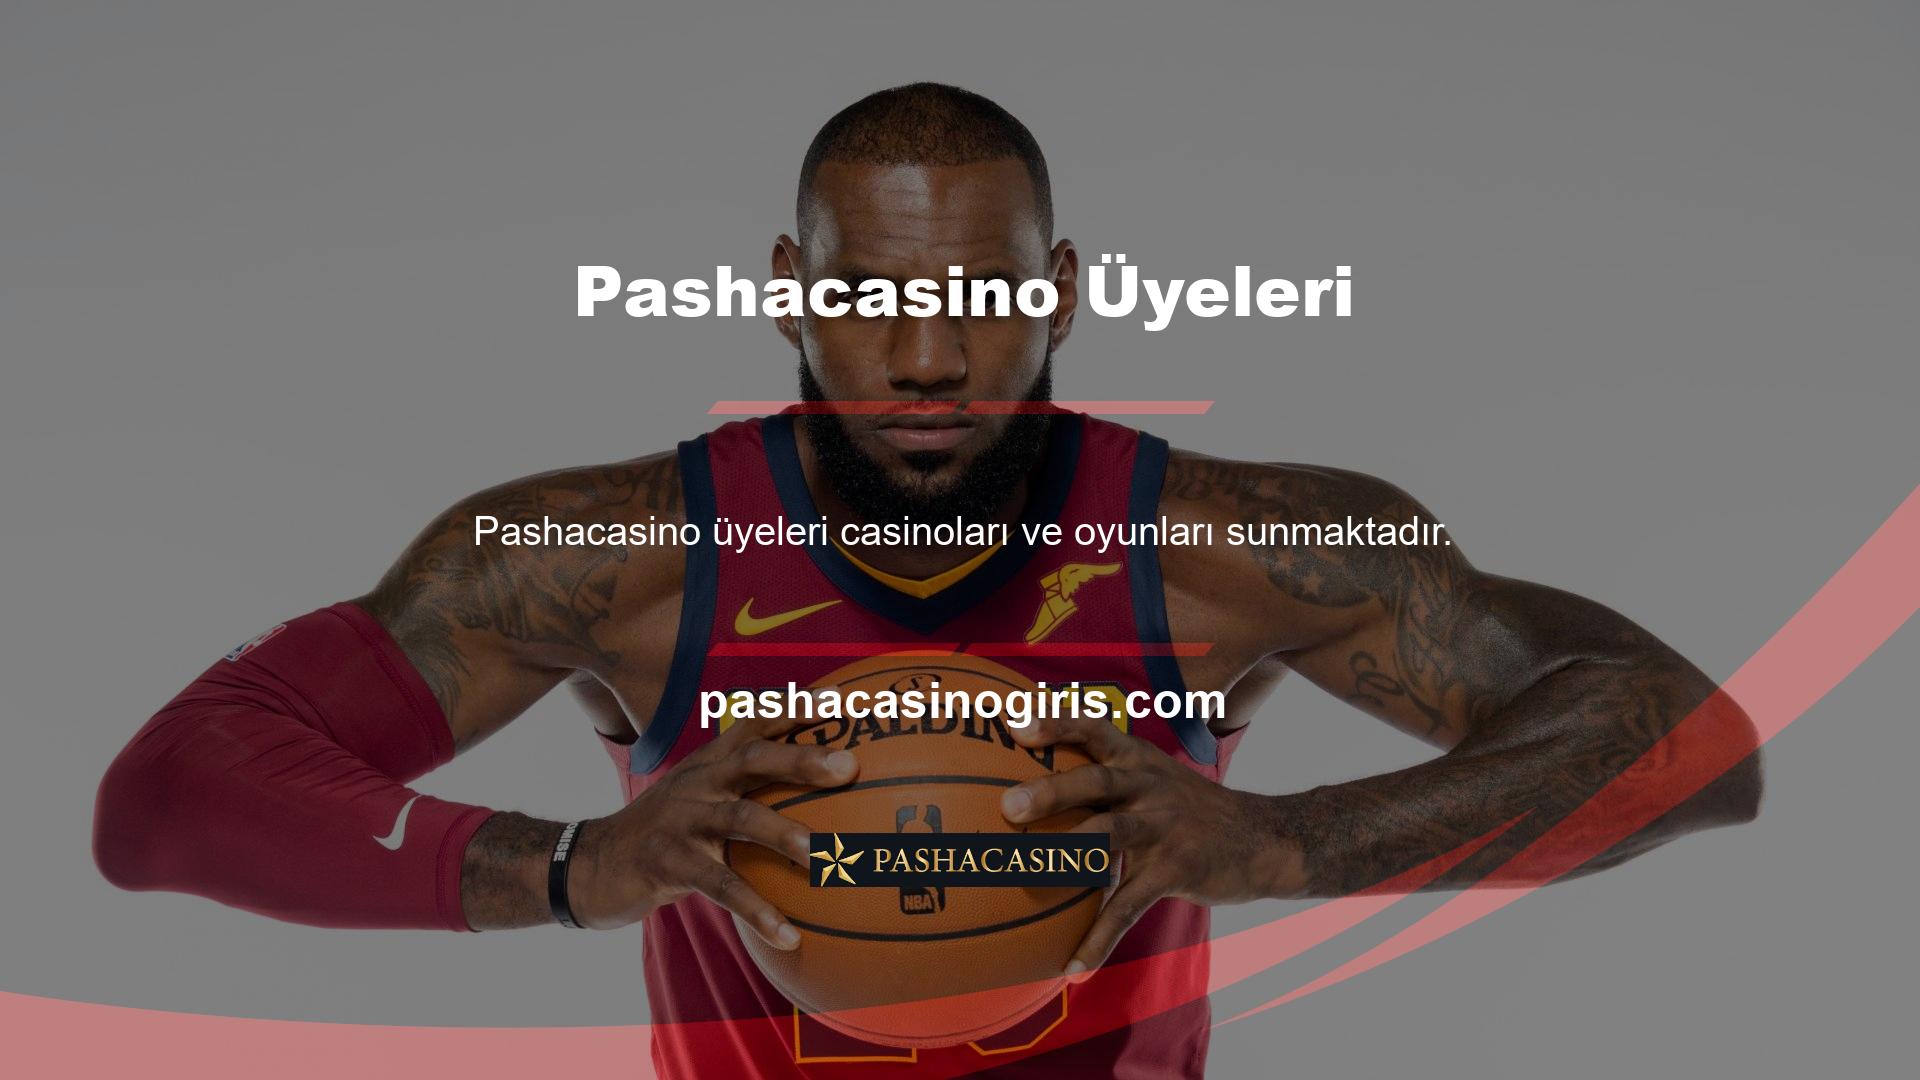 Canlı yayın, Pashacasino web sitesi de dahil olmak üzere çeşitli ağlarda mevcuttur